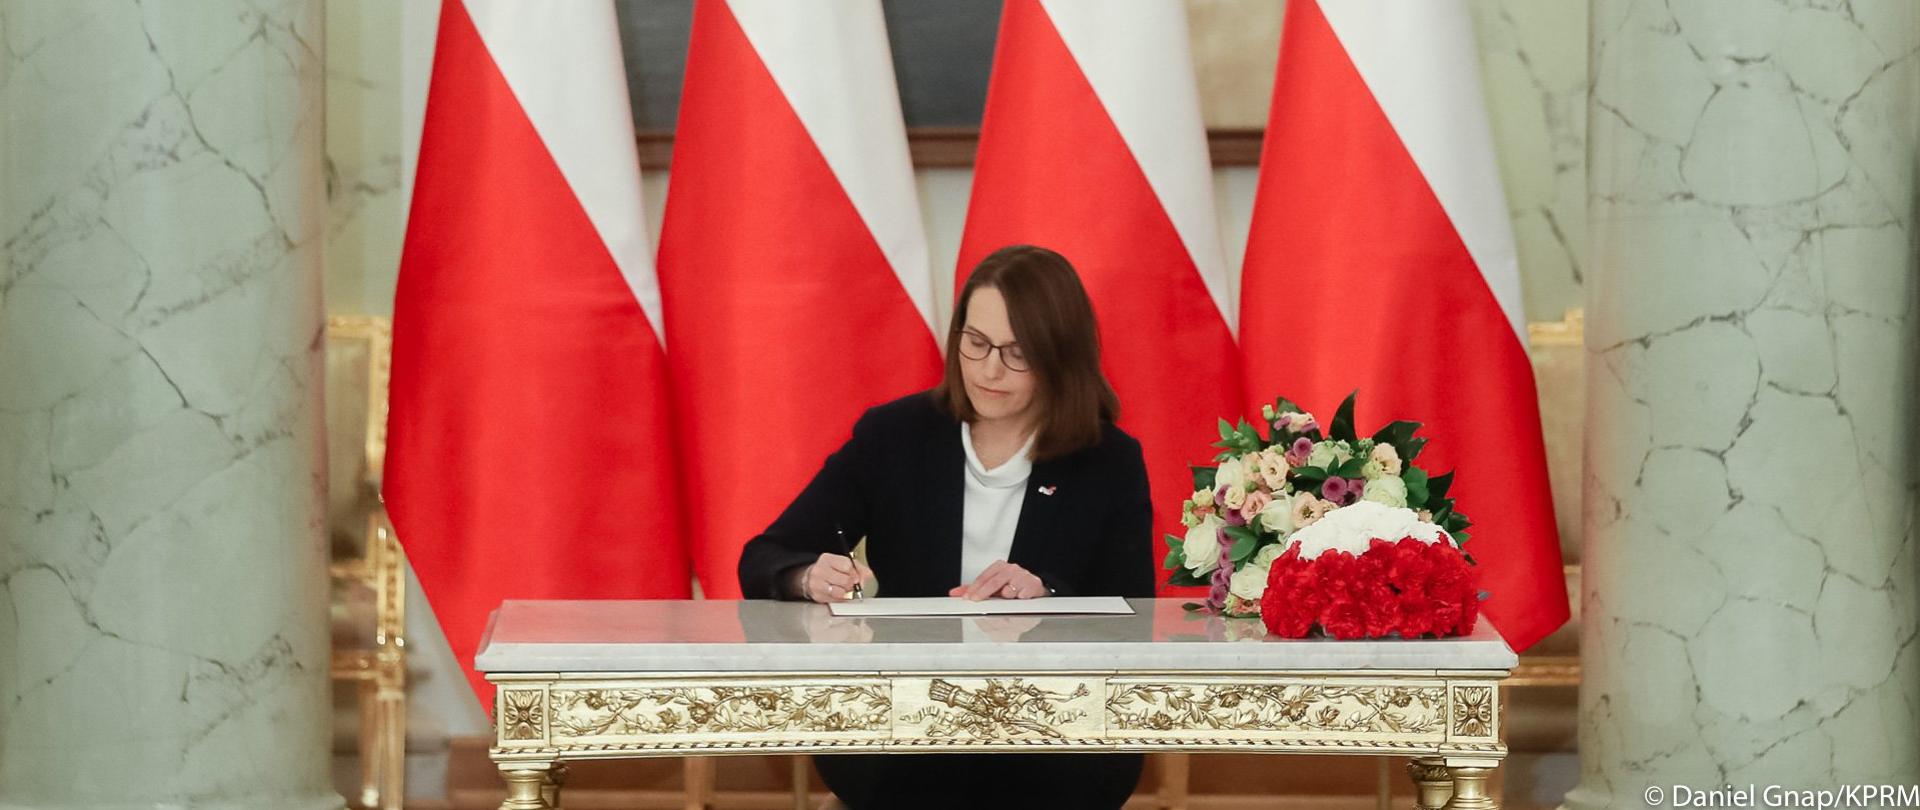 Minister finansów Magdalena Rzeczkowska przy stole, podpisuje akt mianowania